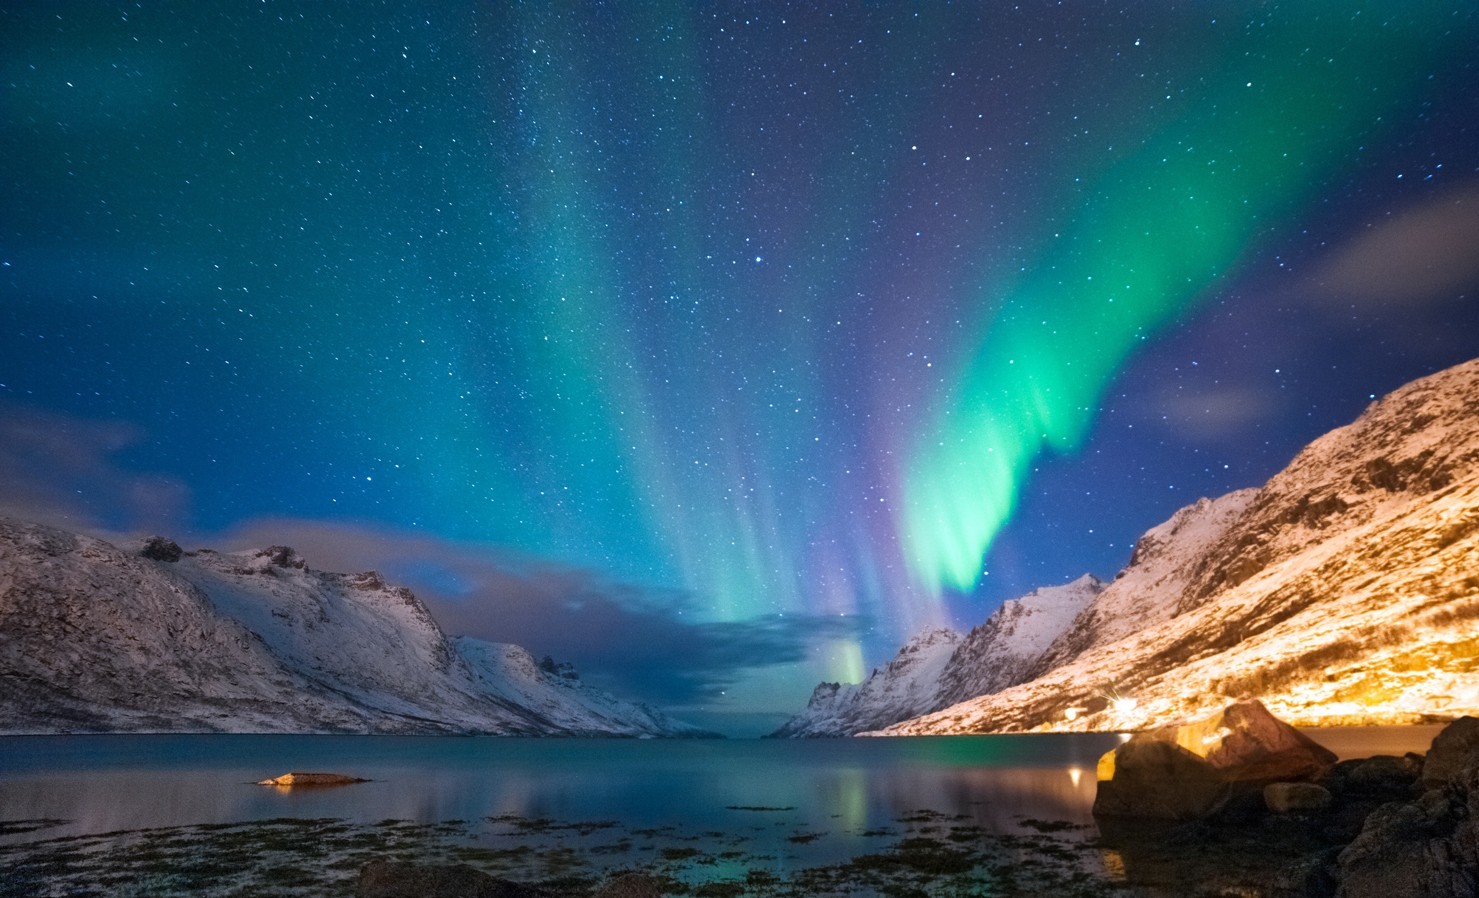 13DLet’s Go Aurora Lapland Finland, Norway & Sweden + Abisko thumbnail 4213